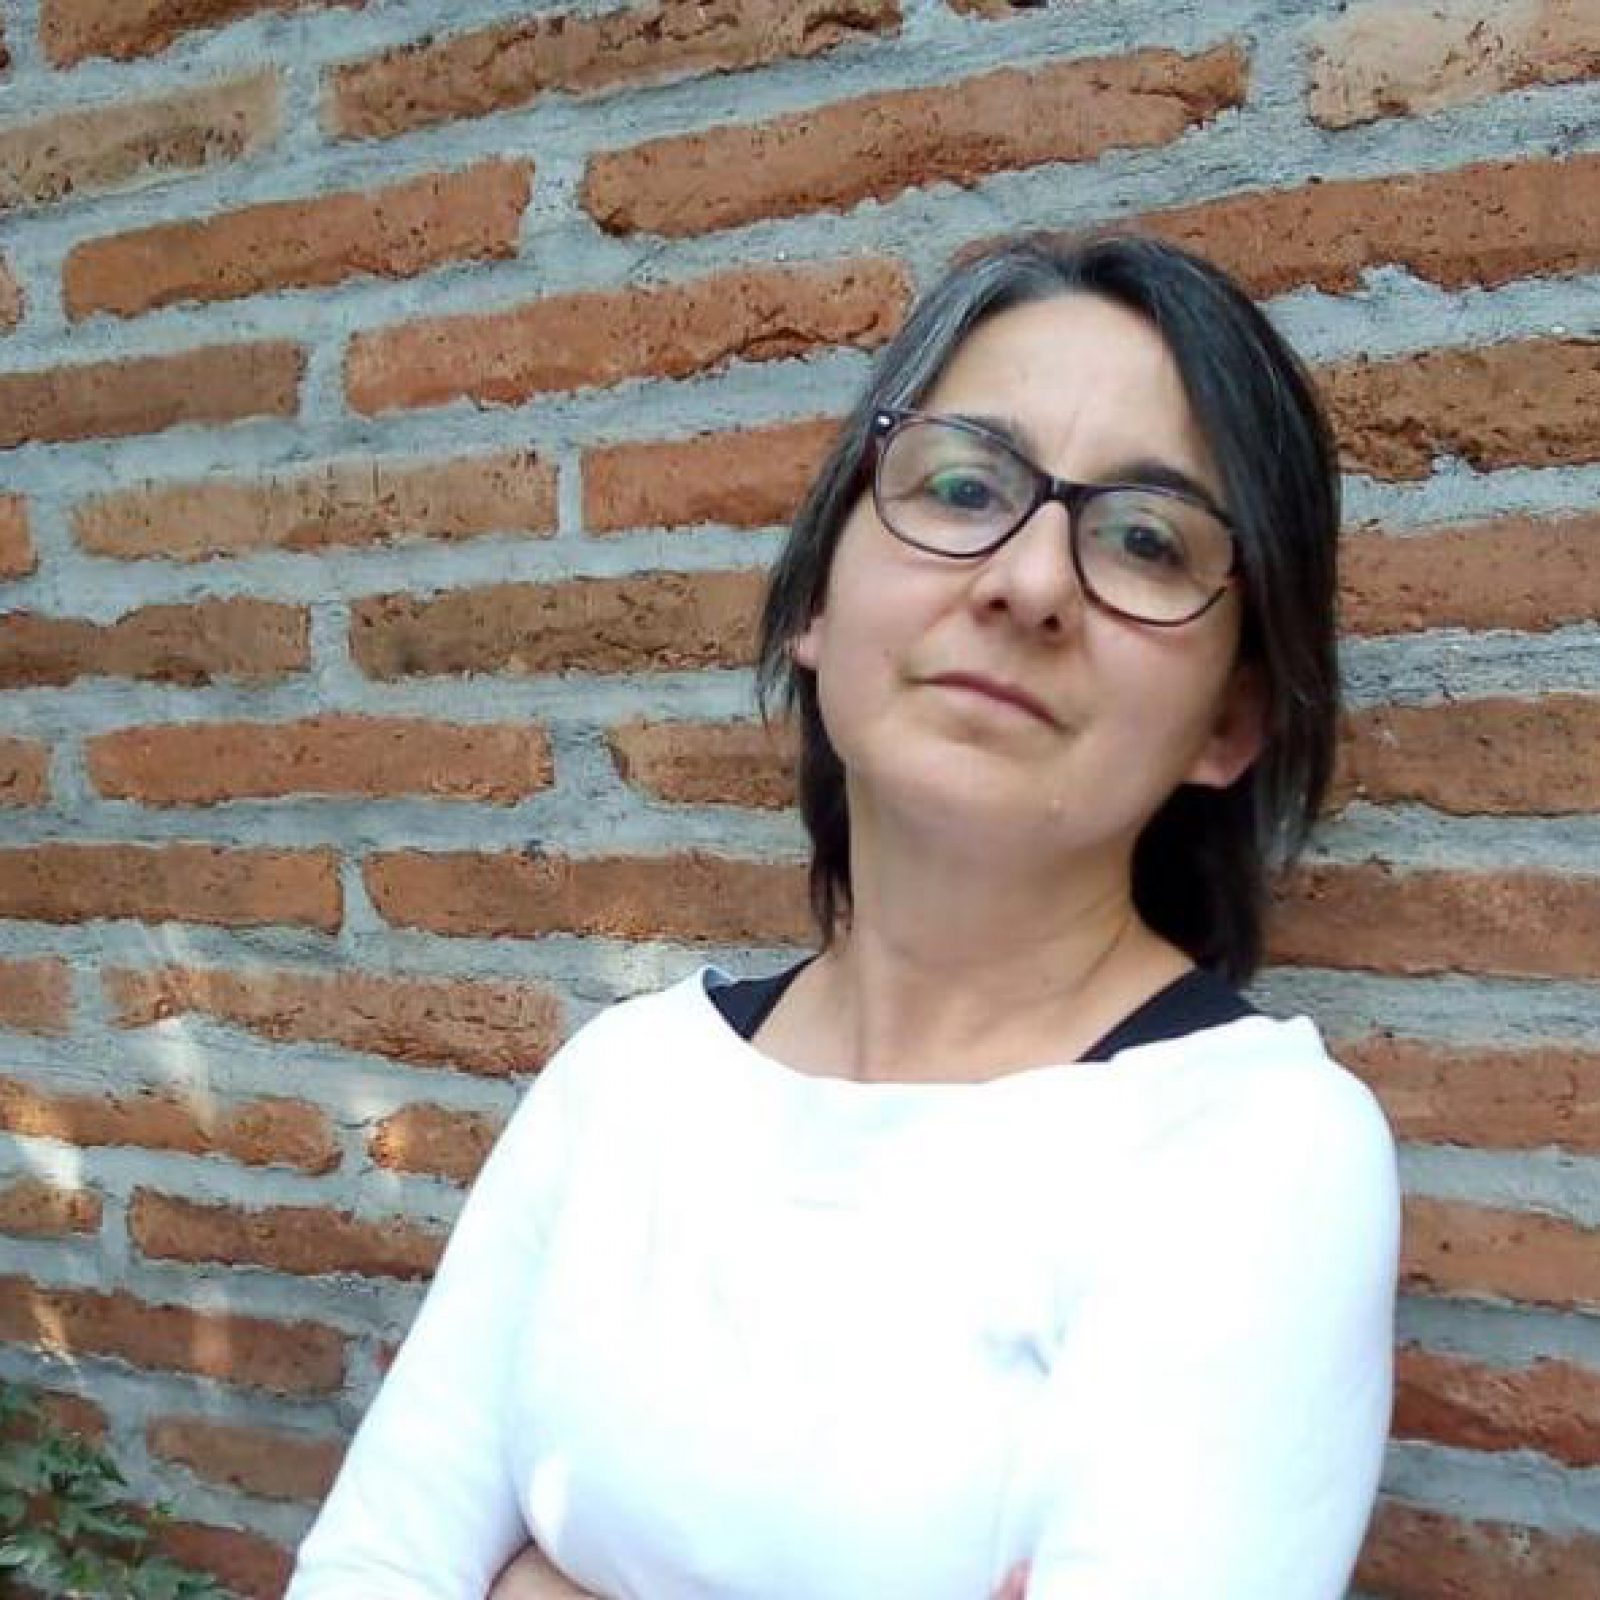 Soledad Novoa, nueva directora del Centro Nacional de Arte Contemporáneo Cerrillos